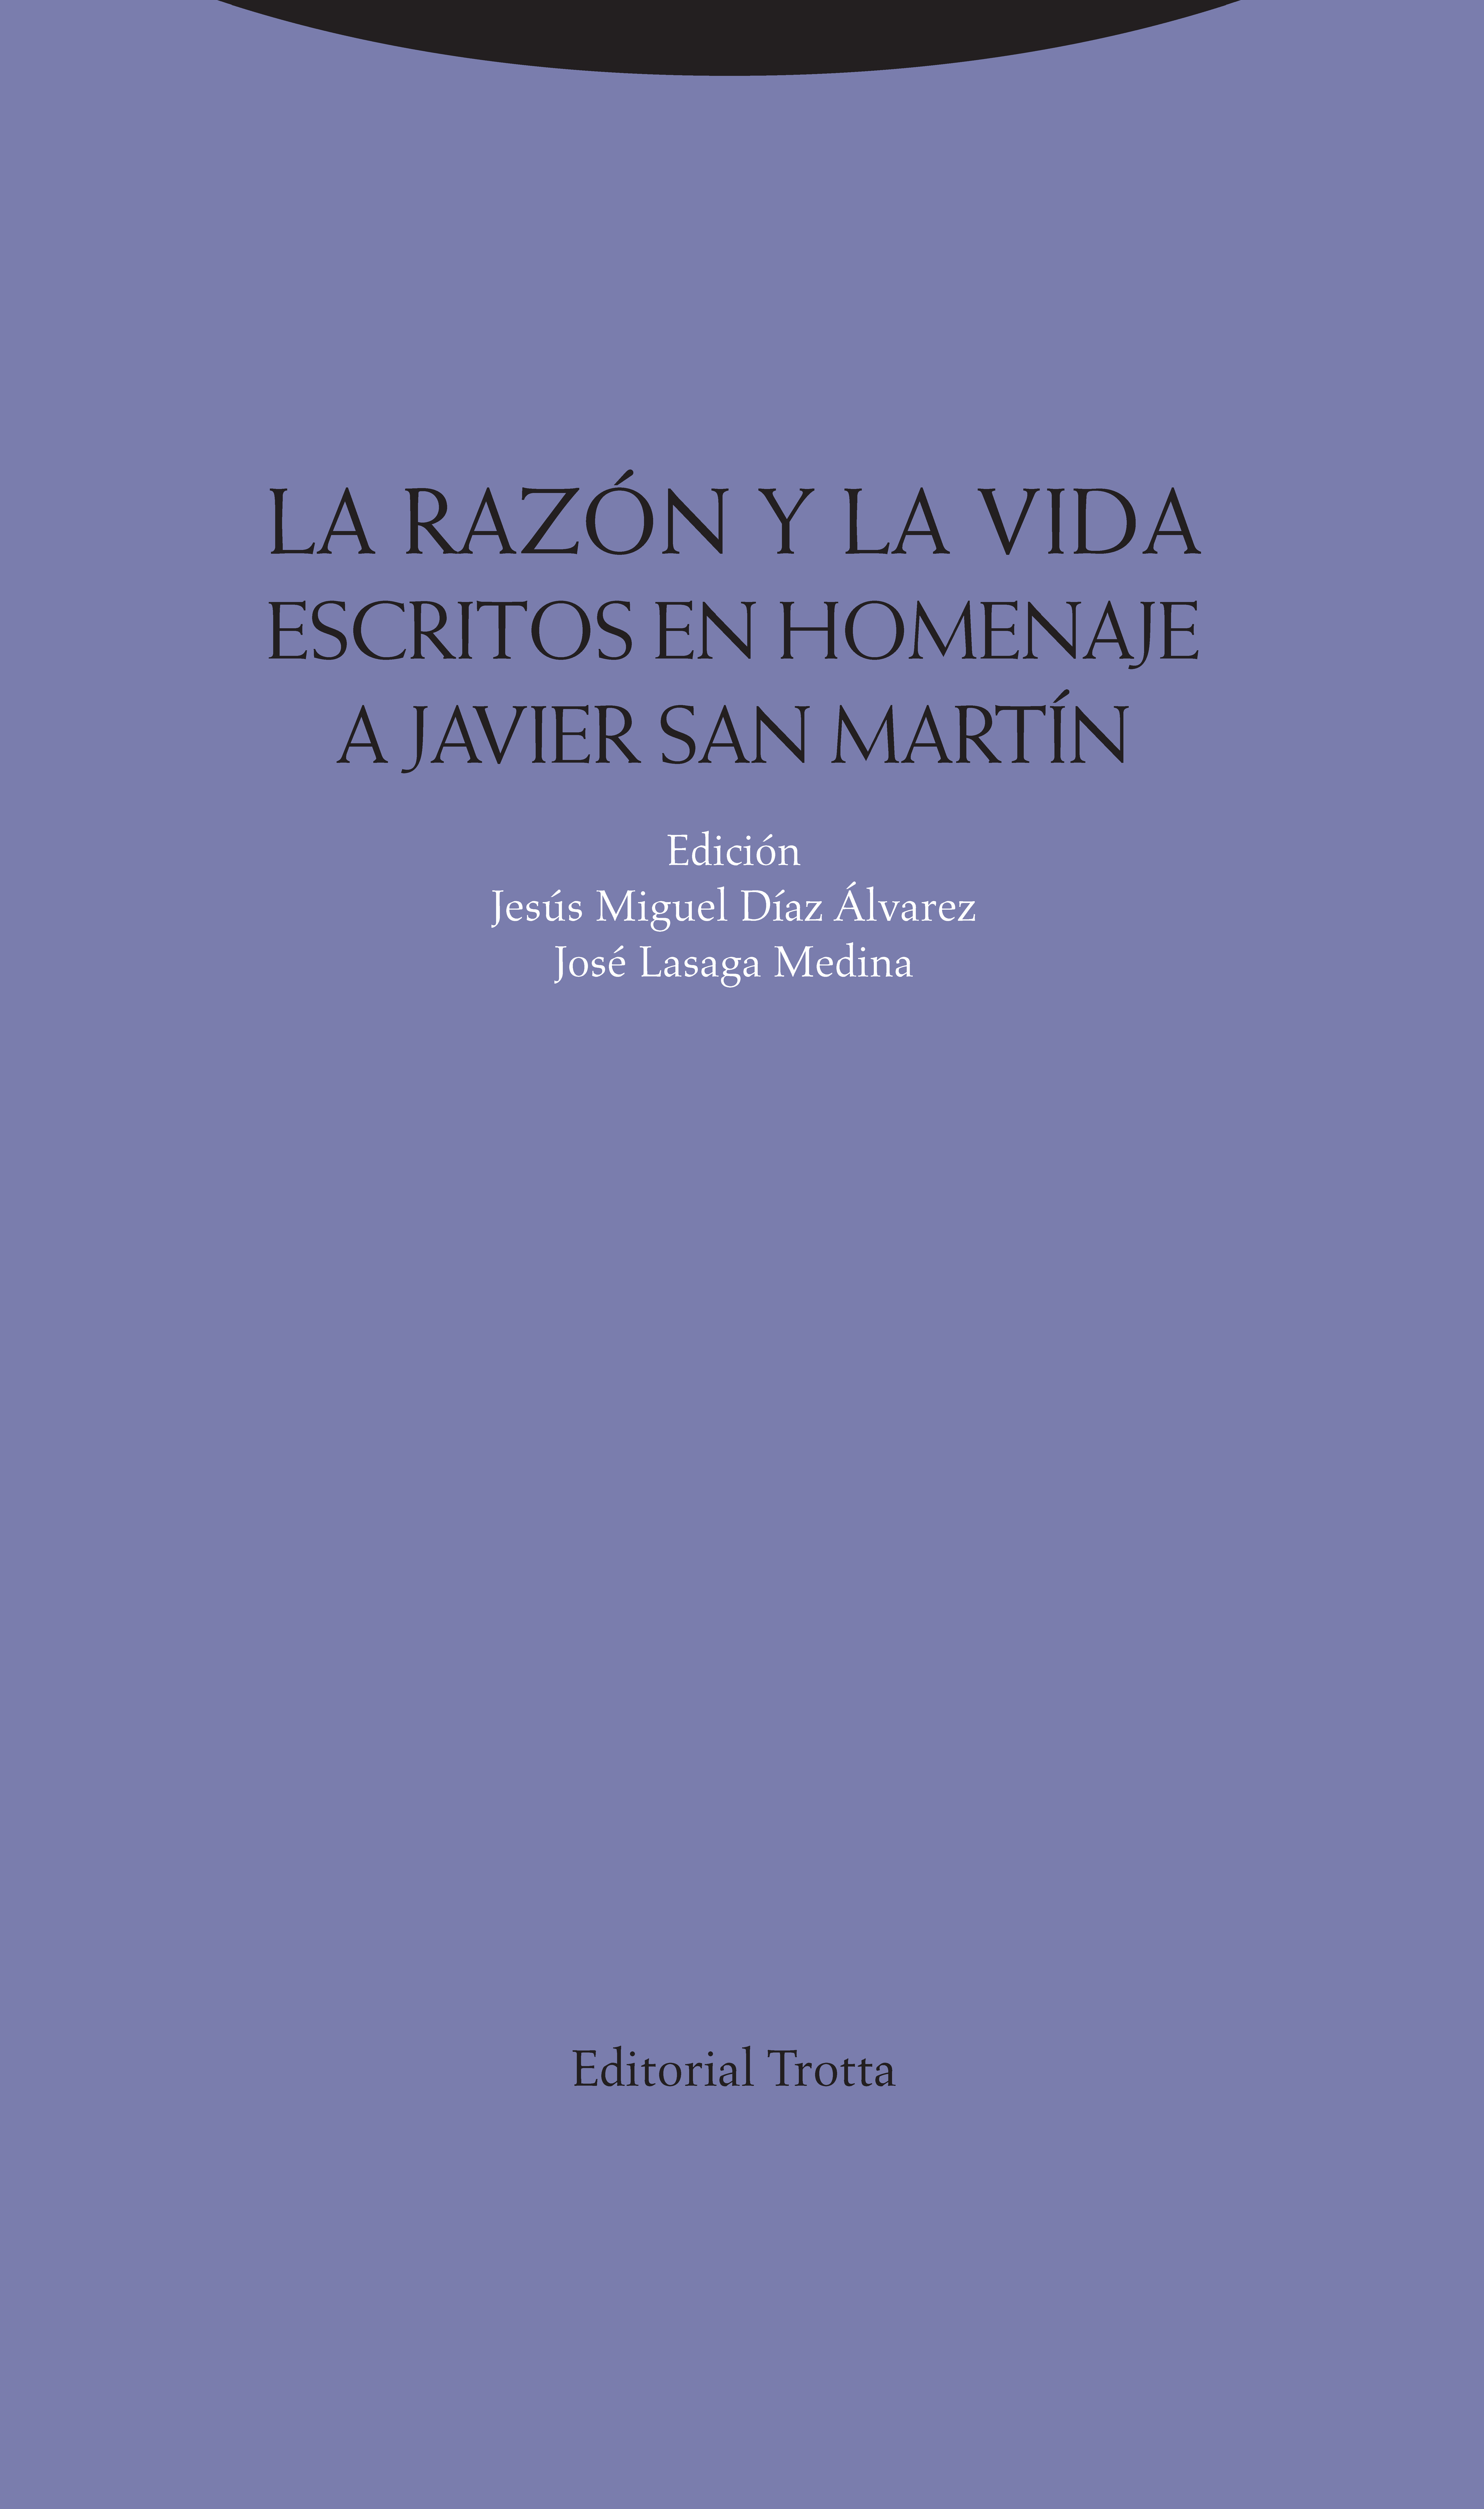 PRESENTACIÓN |  La razón y la vida. Escritos en homenaje a Javier San Martín, en el centro Escuelas Pías de la UNED